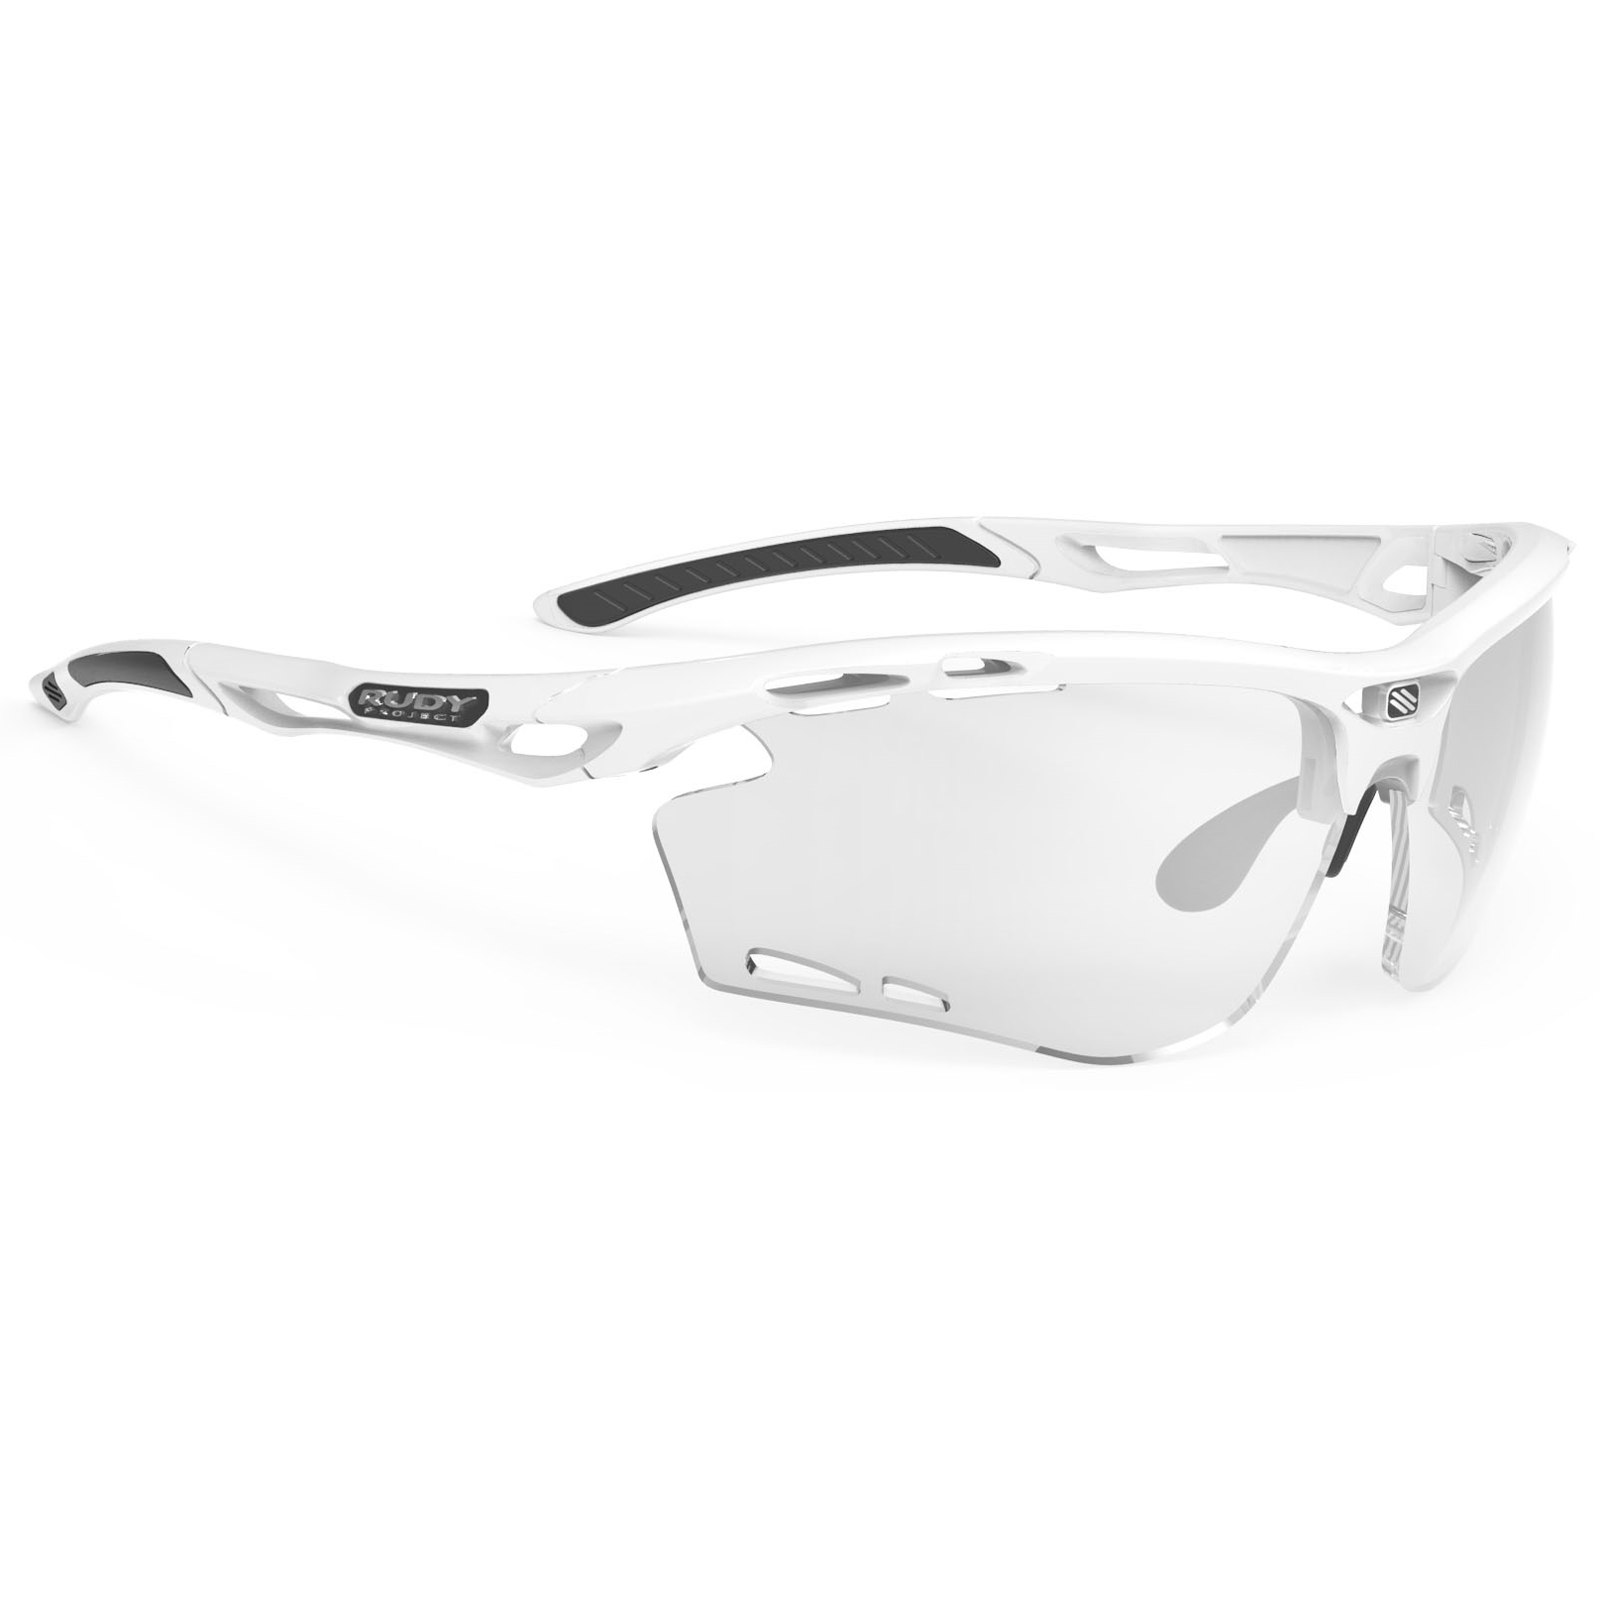 Produktbild von Rudy Project Propulse Brille - White Gloss/Laser Black